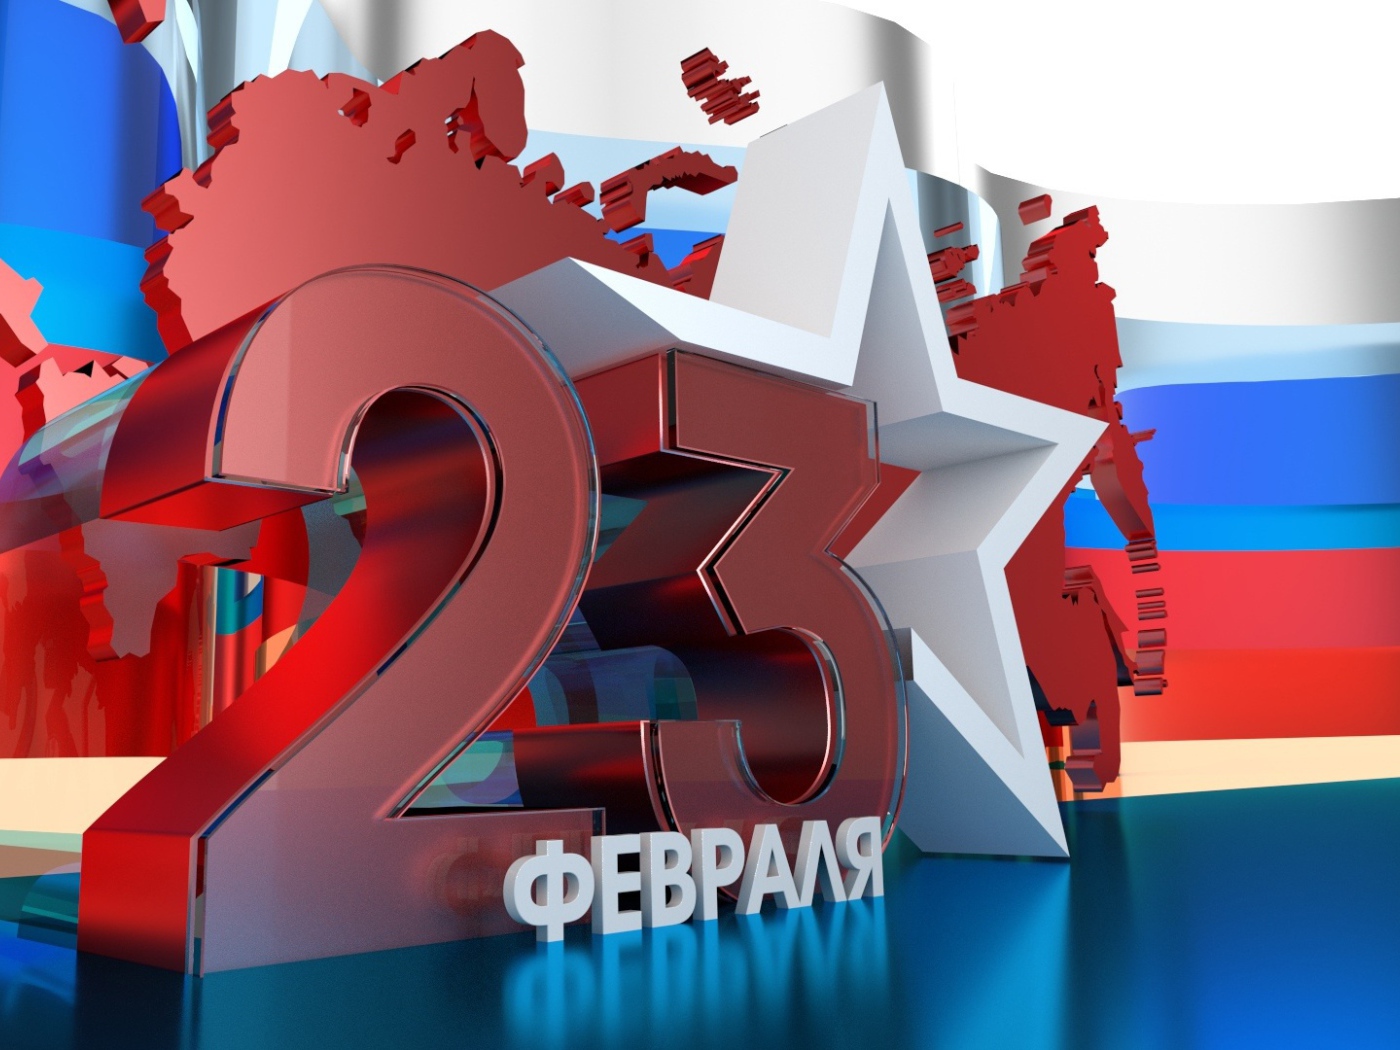 Большие цифры 23 на фоне флага России на День защитника отечества  